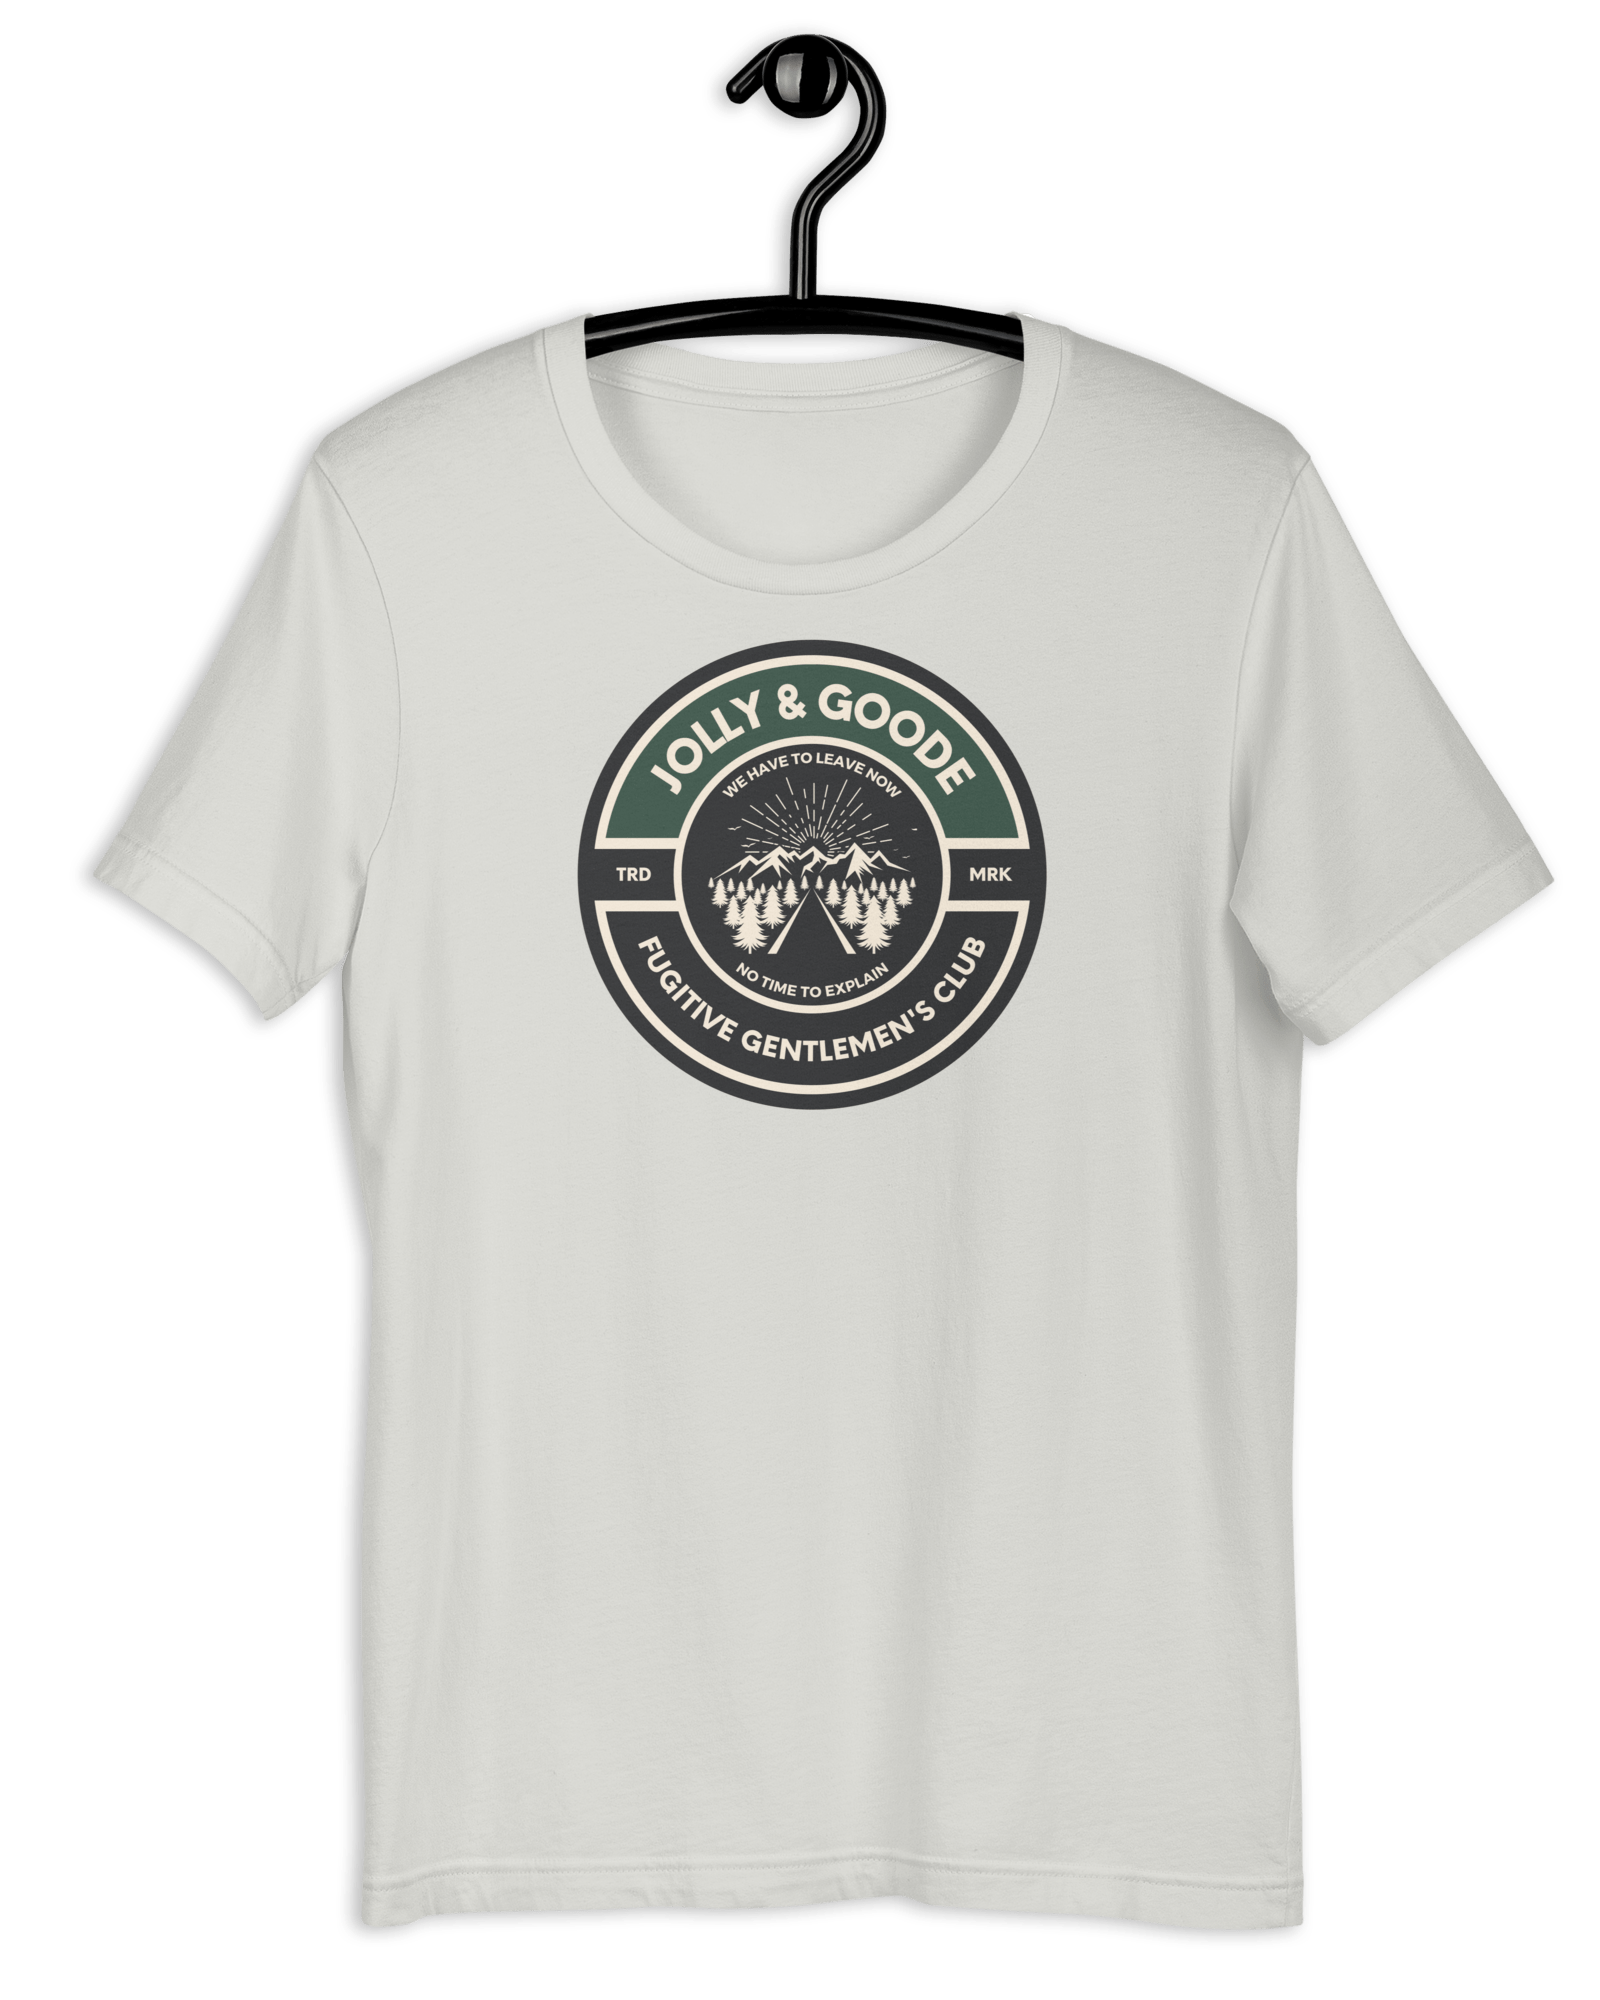 Fugitive Gentlemen's Club T-shirt Silver / S Shirts & Tops Jolly & Goode